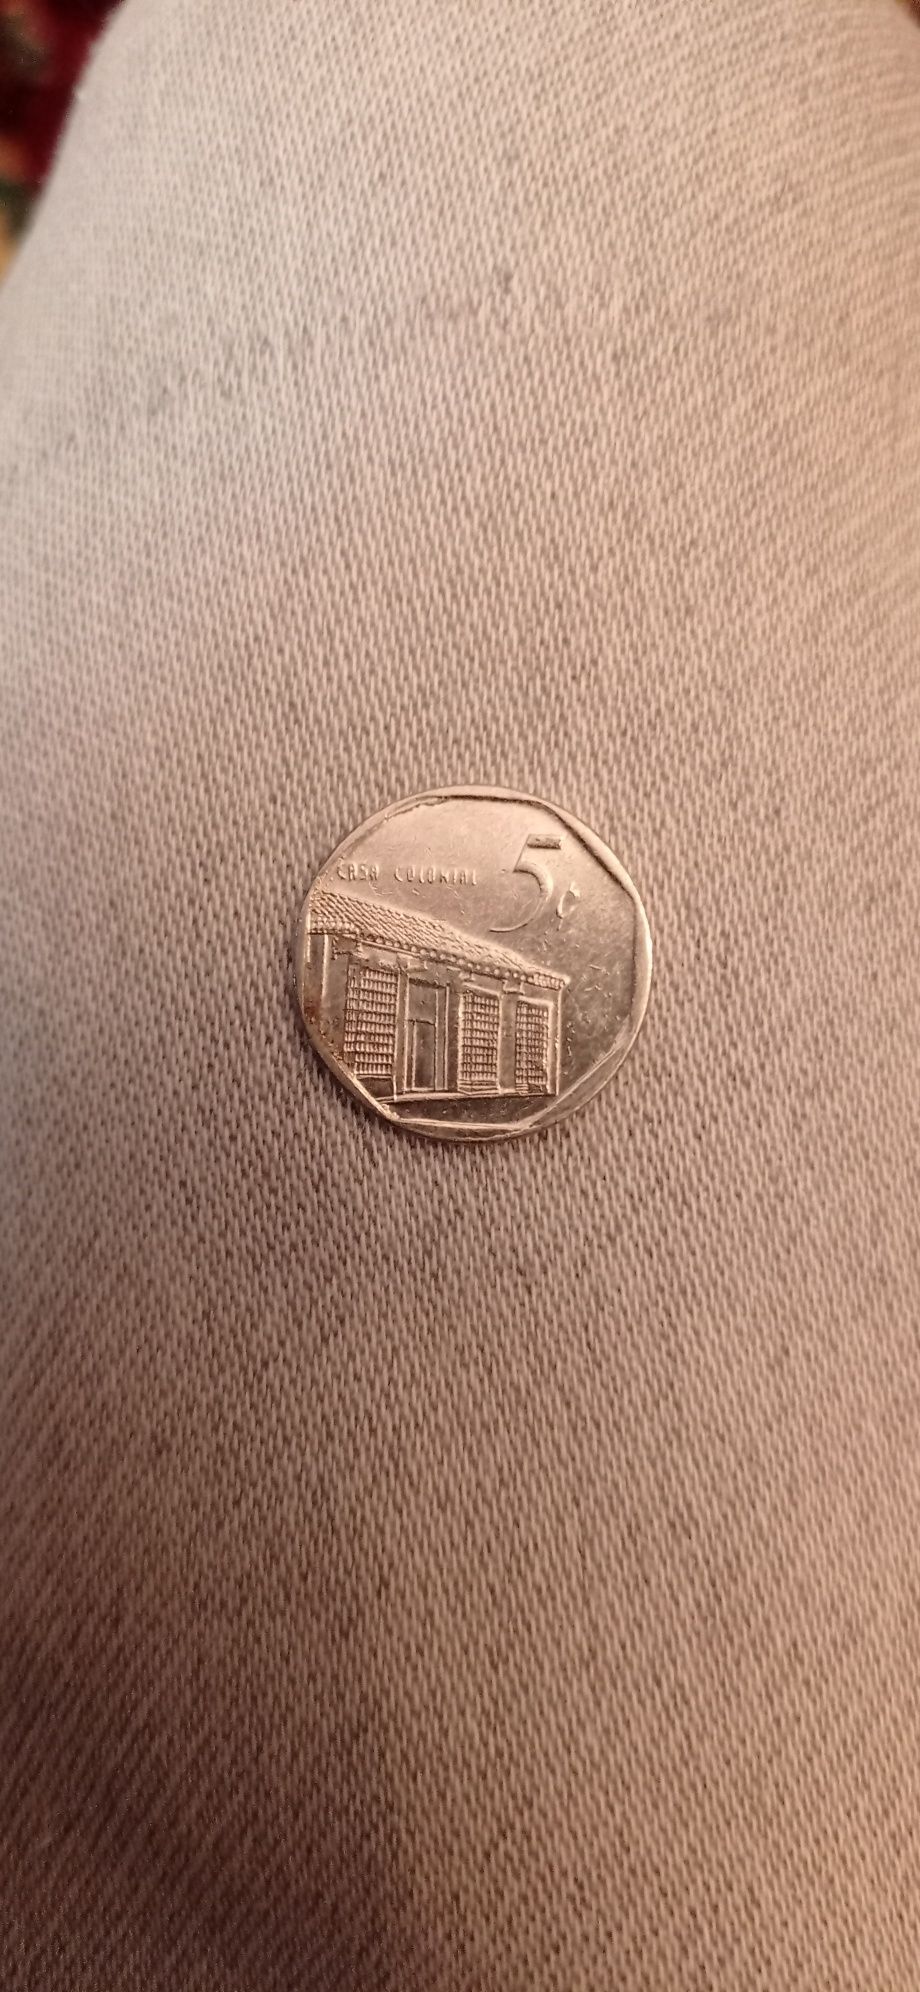 Un centavo de Cuba ,,10santimat Maroc